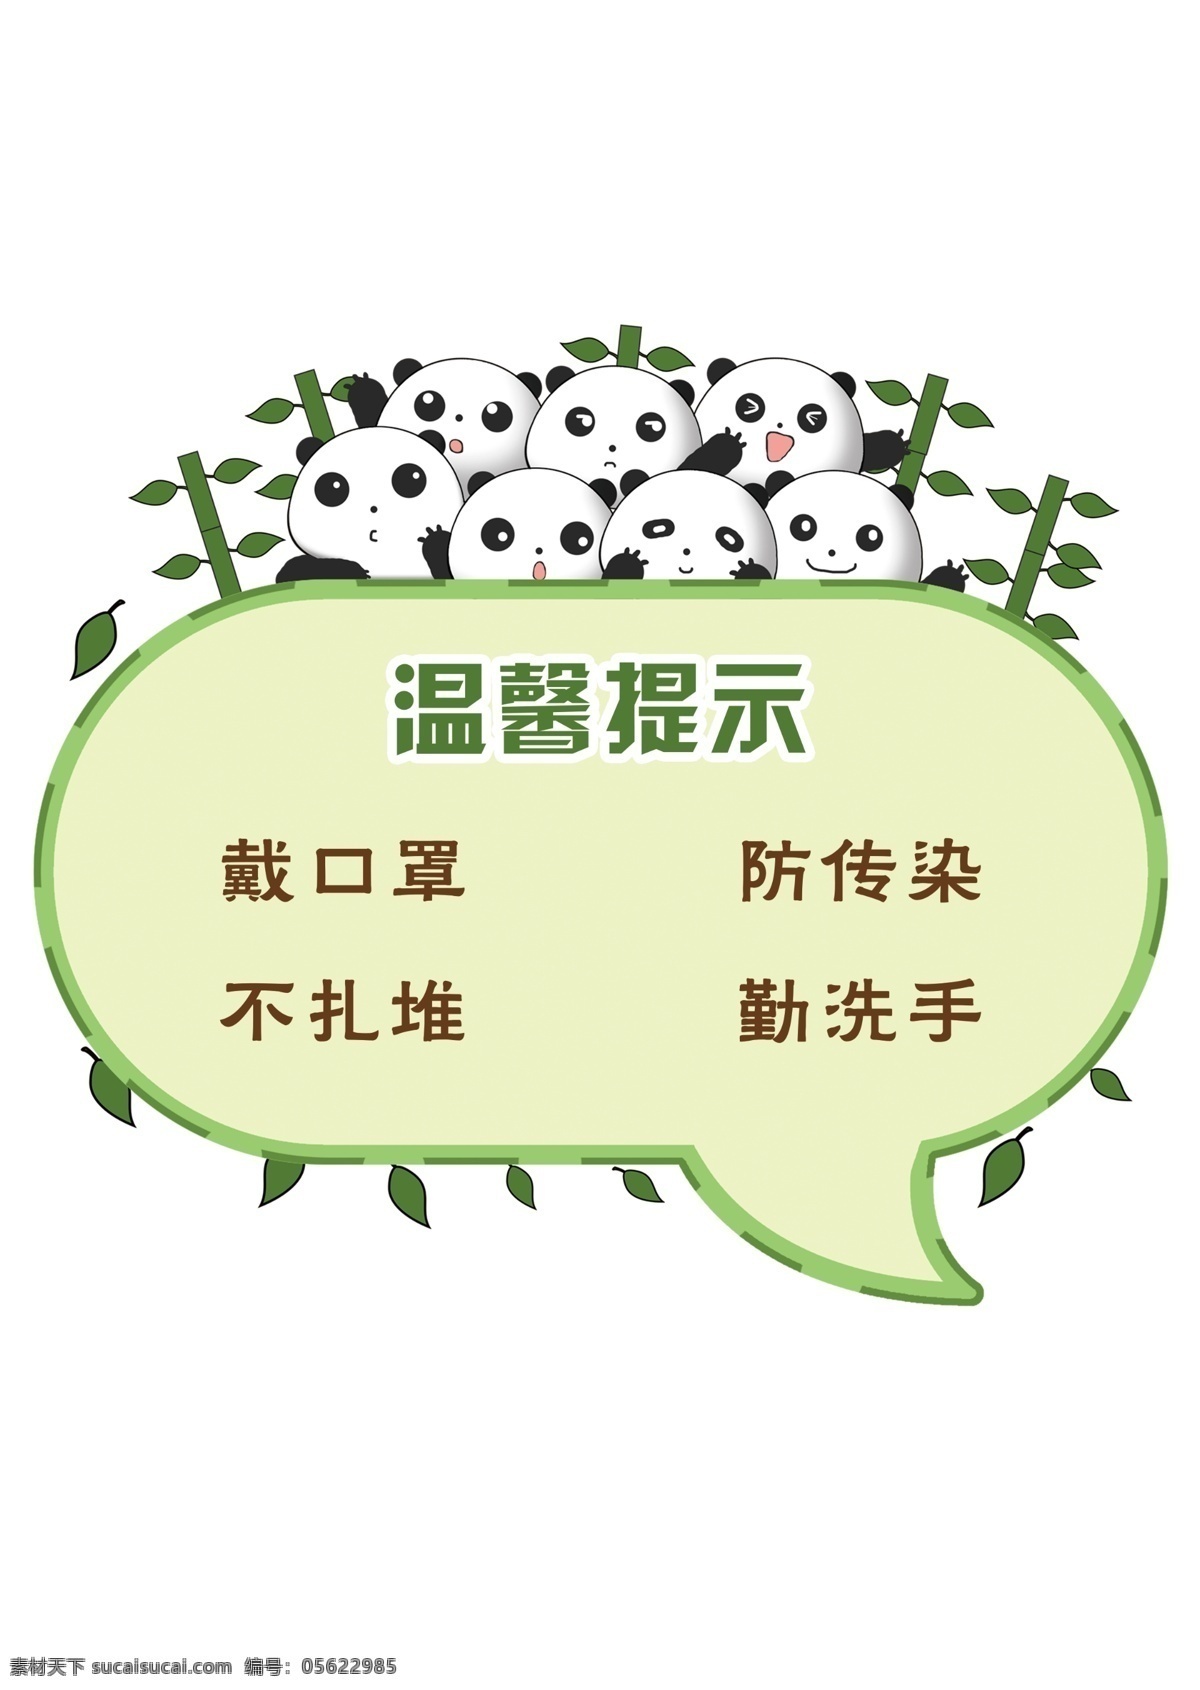 温馨提示 绿色 熊猫 戴口罩 防传染 不扎堆 勤洗手 卡通 海报